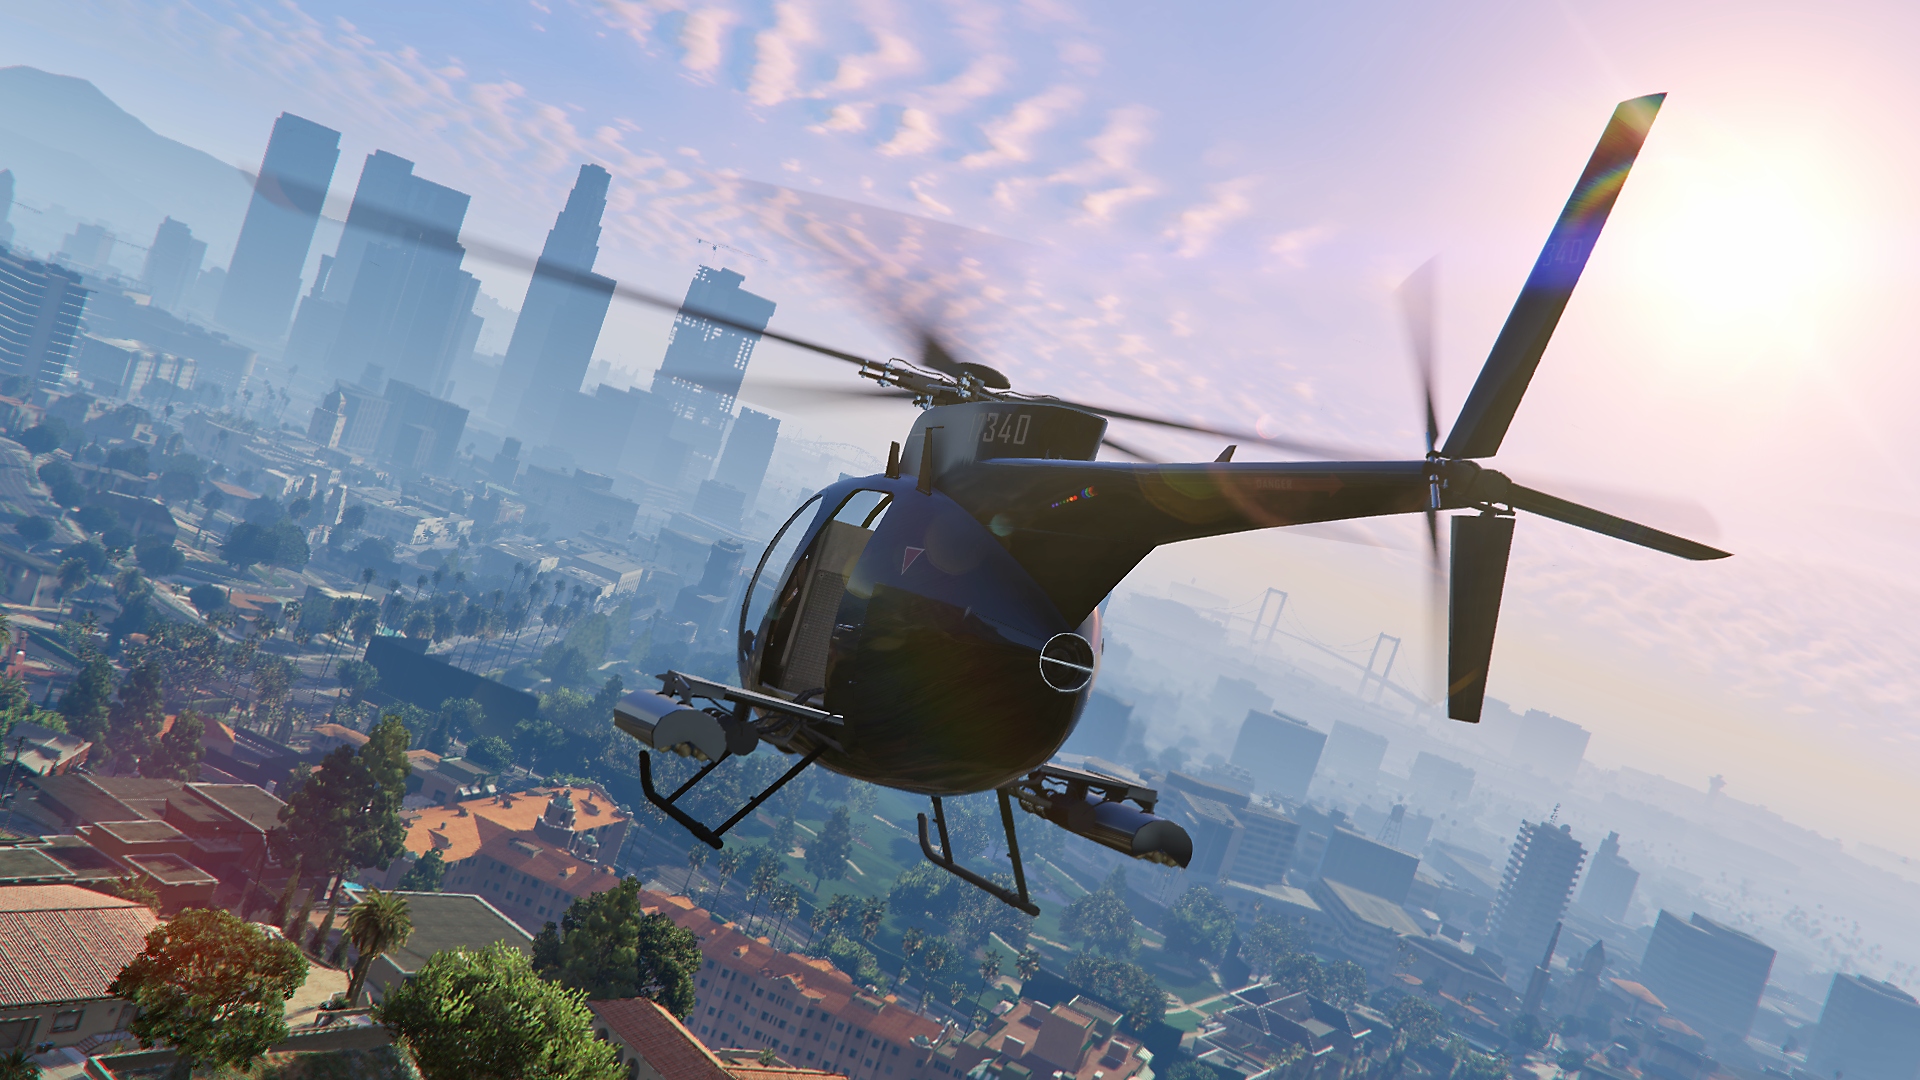 Grand Theft Auto V - Captura de tela mostrando um helicóptero voando com o panorama da cidade ao fundo